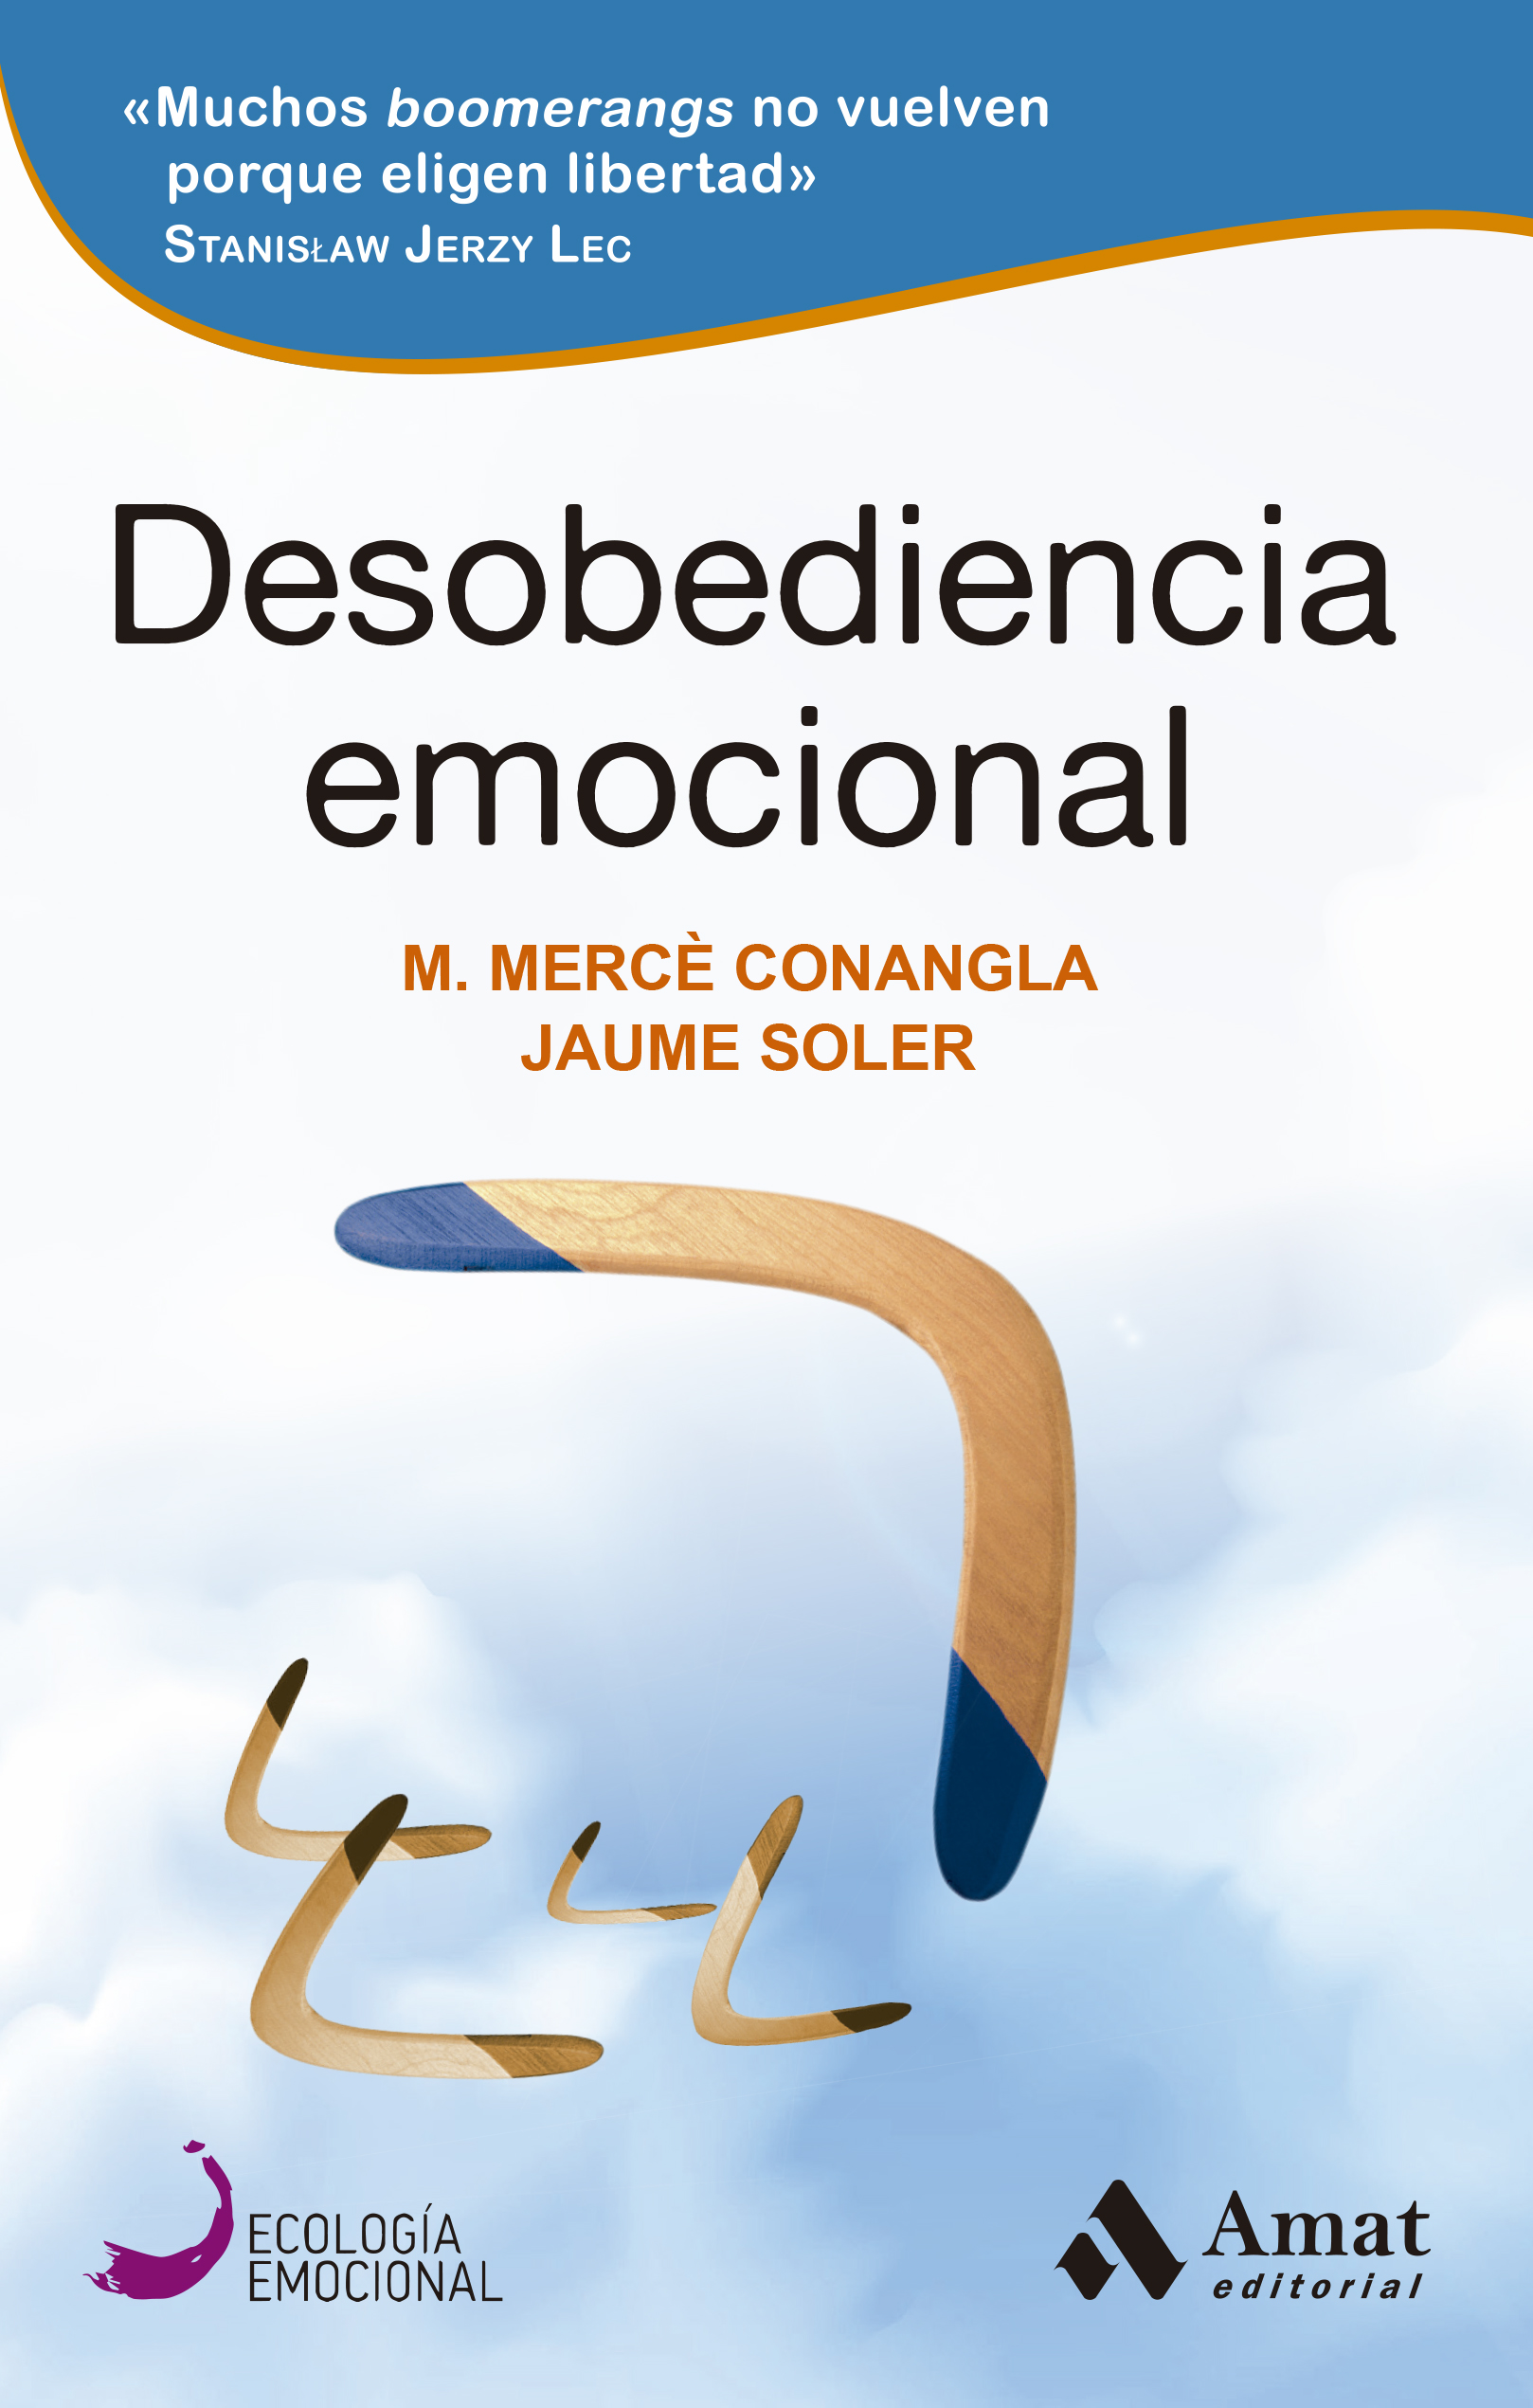 Desobediencia emocional | M. Mercè Conangla | Libros para vivir mejor